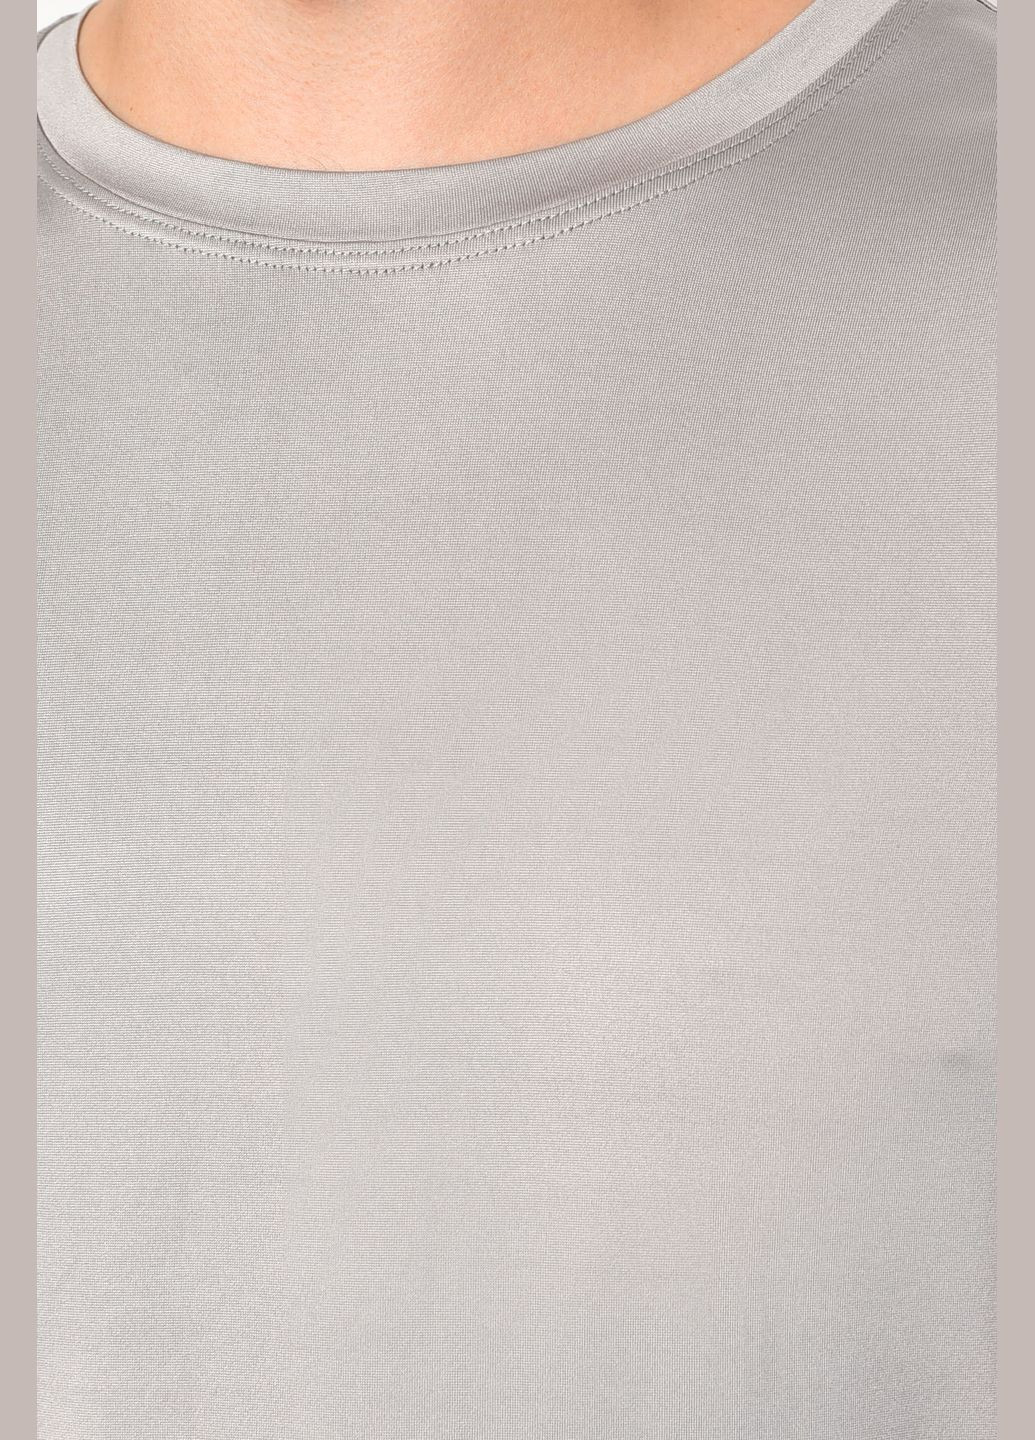 Сіра футболка чоловіча однотонна сірого кольору Let's Shop